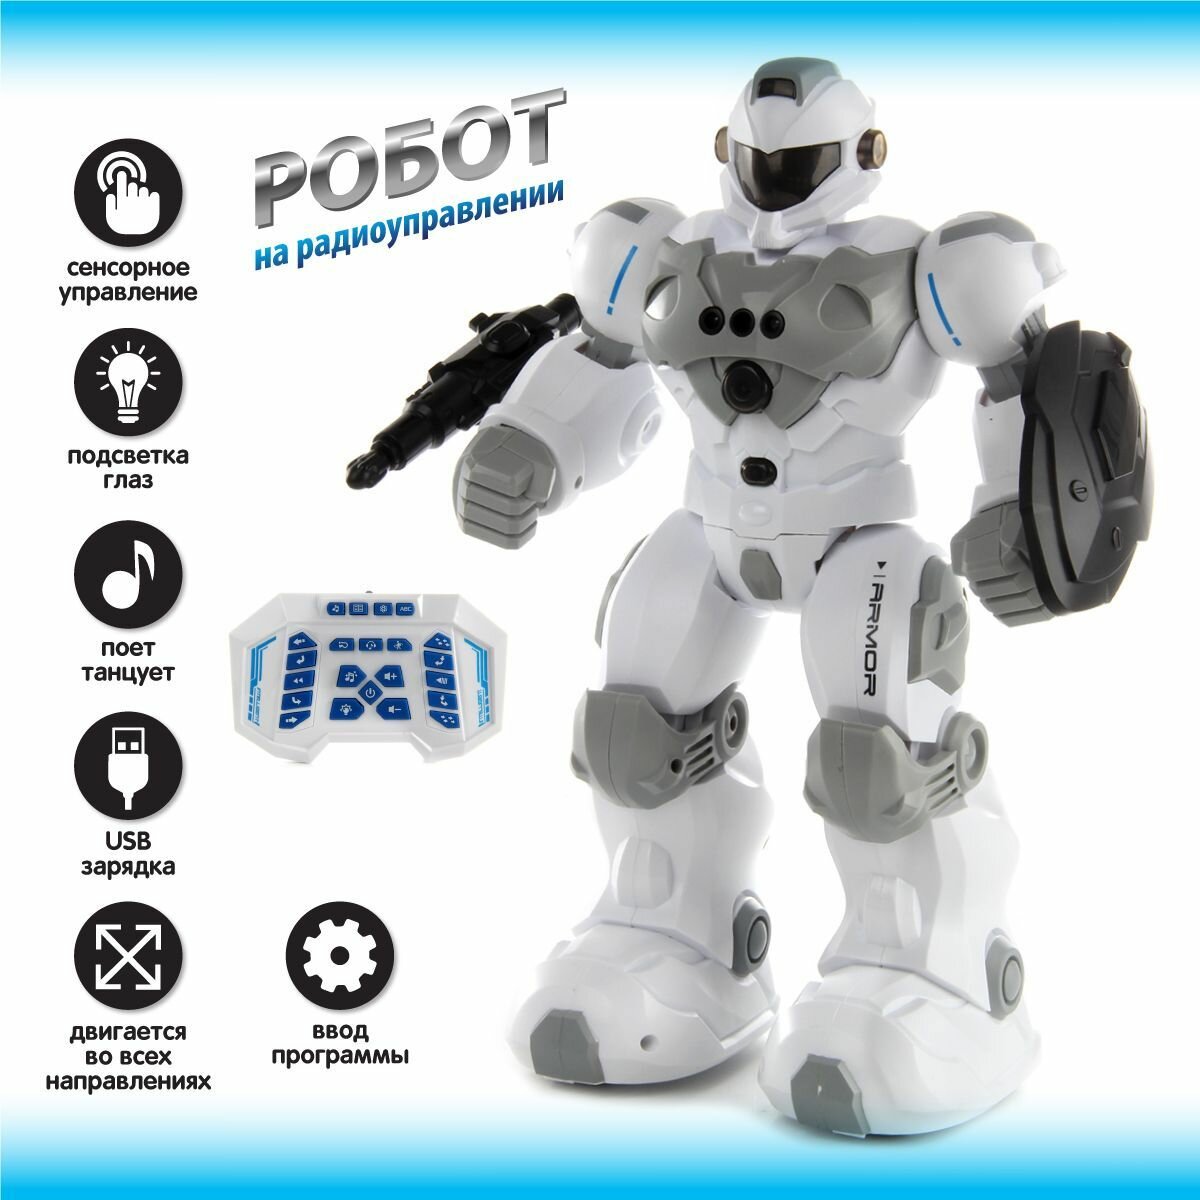 Игрушечный робот на радиоуправлении, Veld Co / Детский боевой робот на пульте управления, сенсорное управление / Интерактивная игрушка со светом и звуком для детей